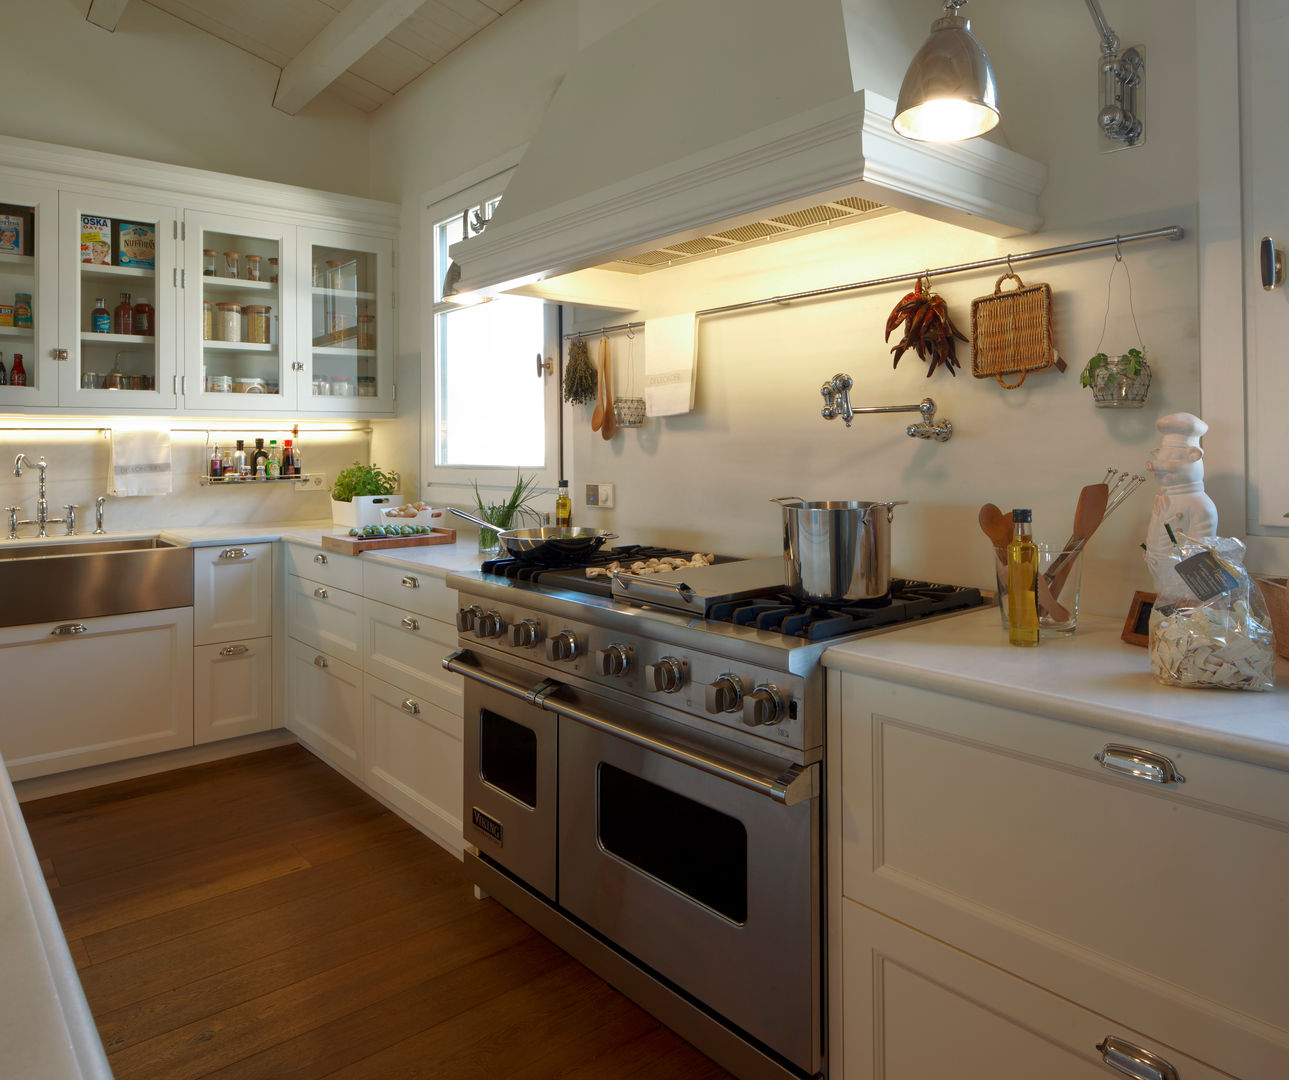 Cocina de estilo americano , DEULONDER arquitectura domestica DEULONDER arquitectura domestica مطبخ